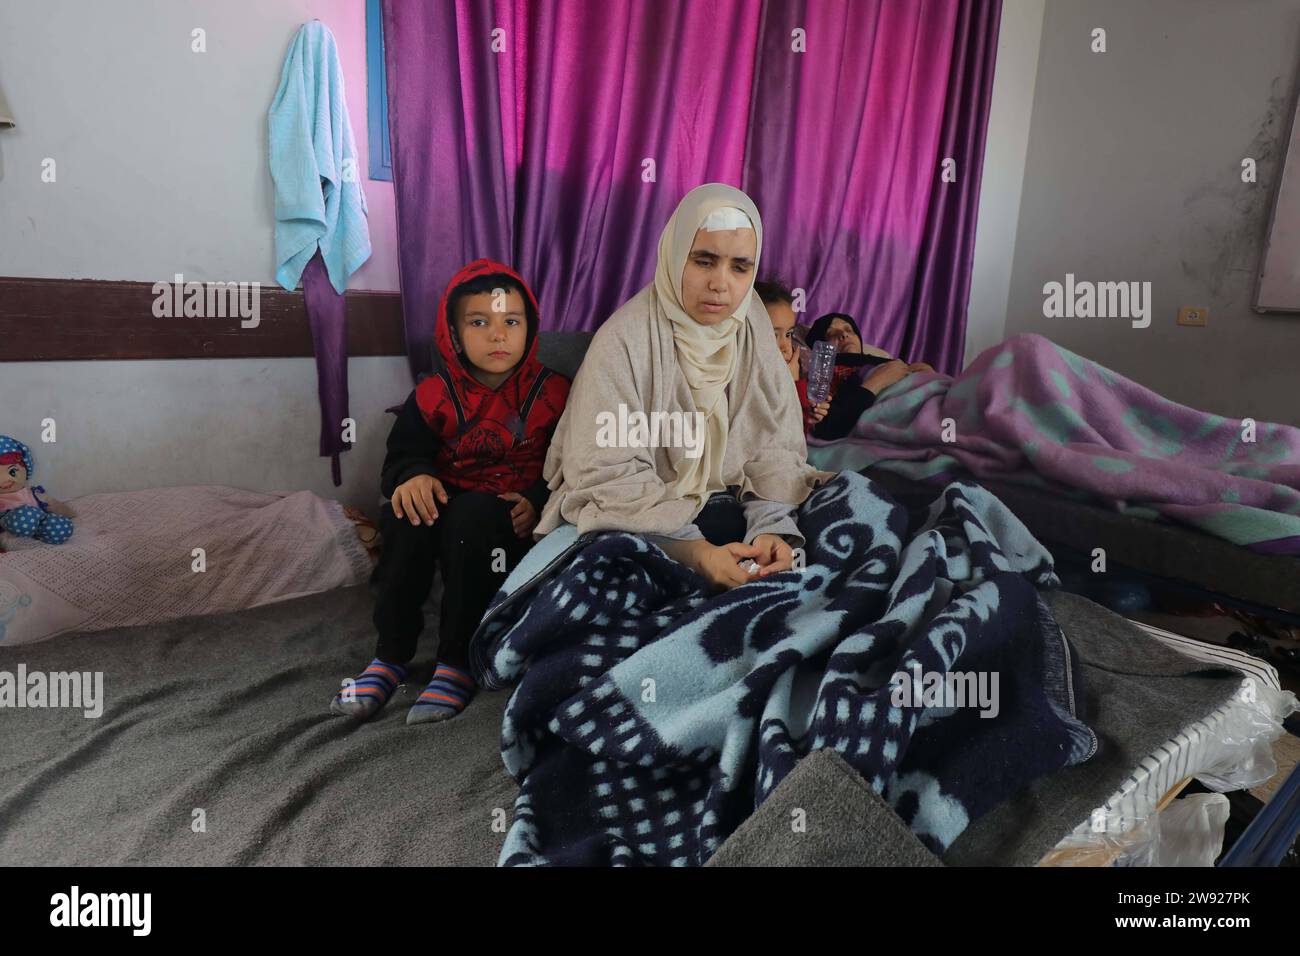 L’enseignante palestinienne Rahma Abu Safi, 30 ans, est soignée dans un hôpital de campagne installé dans l’école Khadija l’enseignante palestinienne Rahma Abu Safi, 30 ans, est soignée dans un hôpital de campagne installé dans l’école Khadija, à l’ouest de la ville de Deir al-Balah, le 23 décembre 2023. Abu Safi travaille comme professeur d'anglais, et elle a été aveuglée après avoir été blessée lors du bombardement de la maison de sa famille par les armes israéliennes dans le quartier de Tal al al-Hawa, au sud de la ville de Gaza, il y a environ un mois. Photo Omar Ashtawy apaimages Dair El-Balah bande de Gaza territoire palestinien 231223 Dair El-Balah OSH 2 003 Copyright : xa Banque D'Images